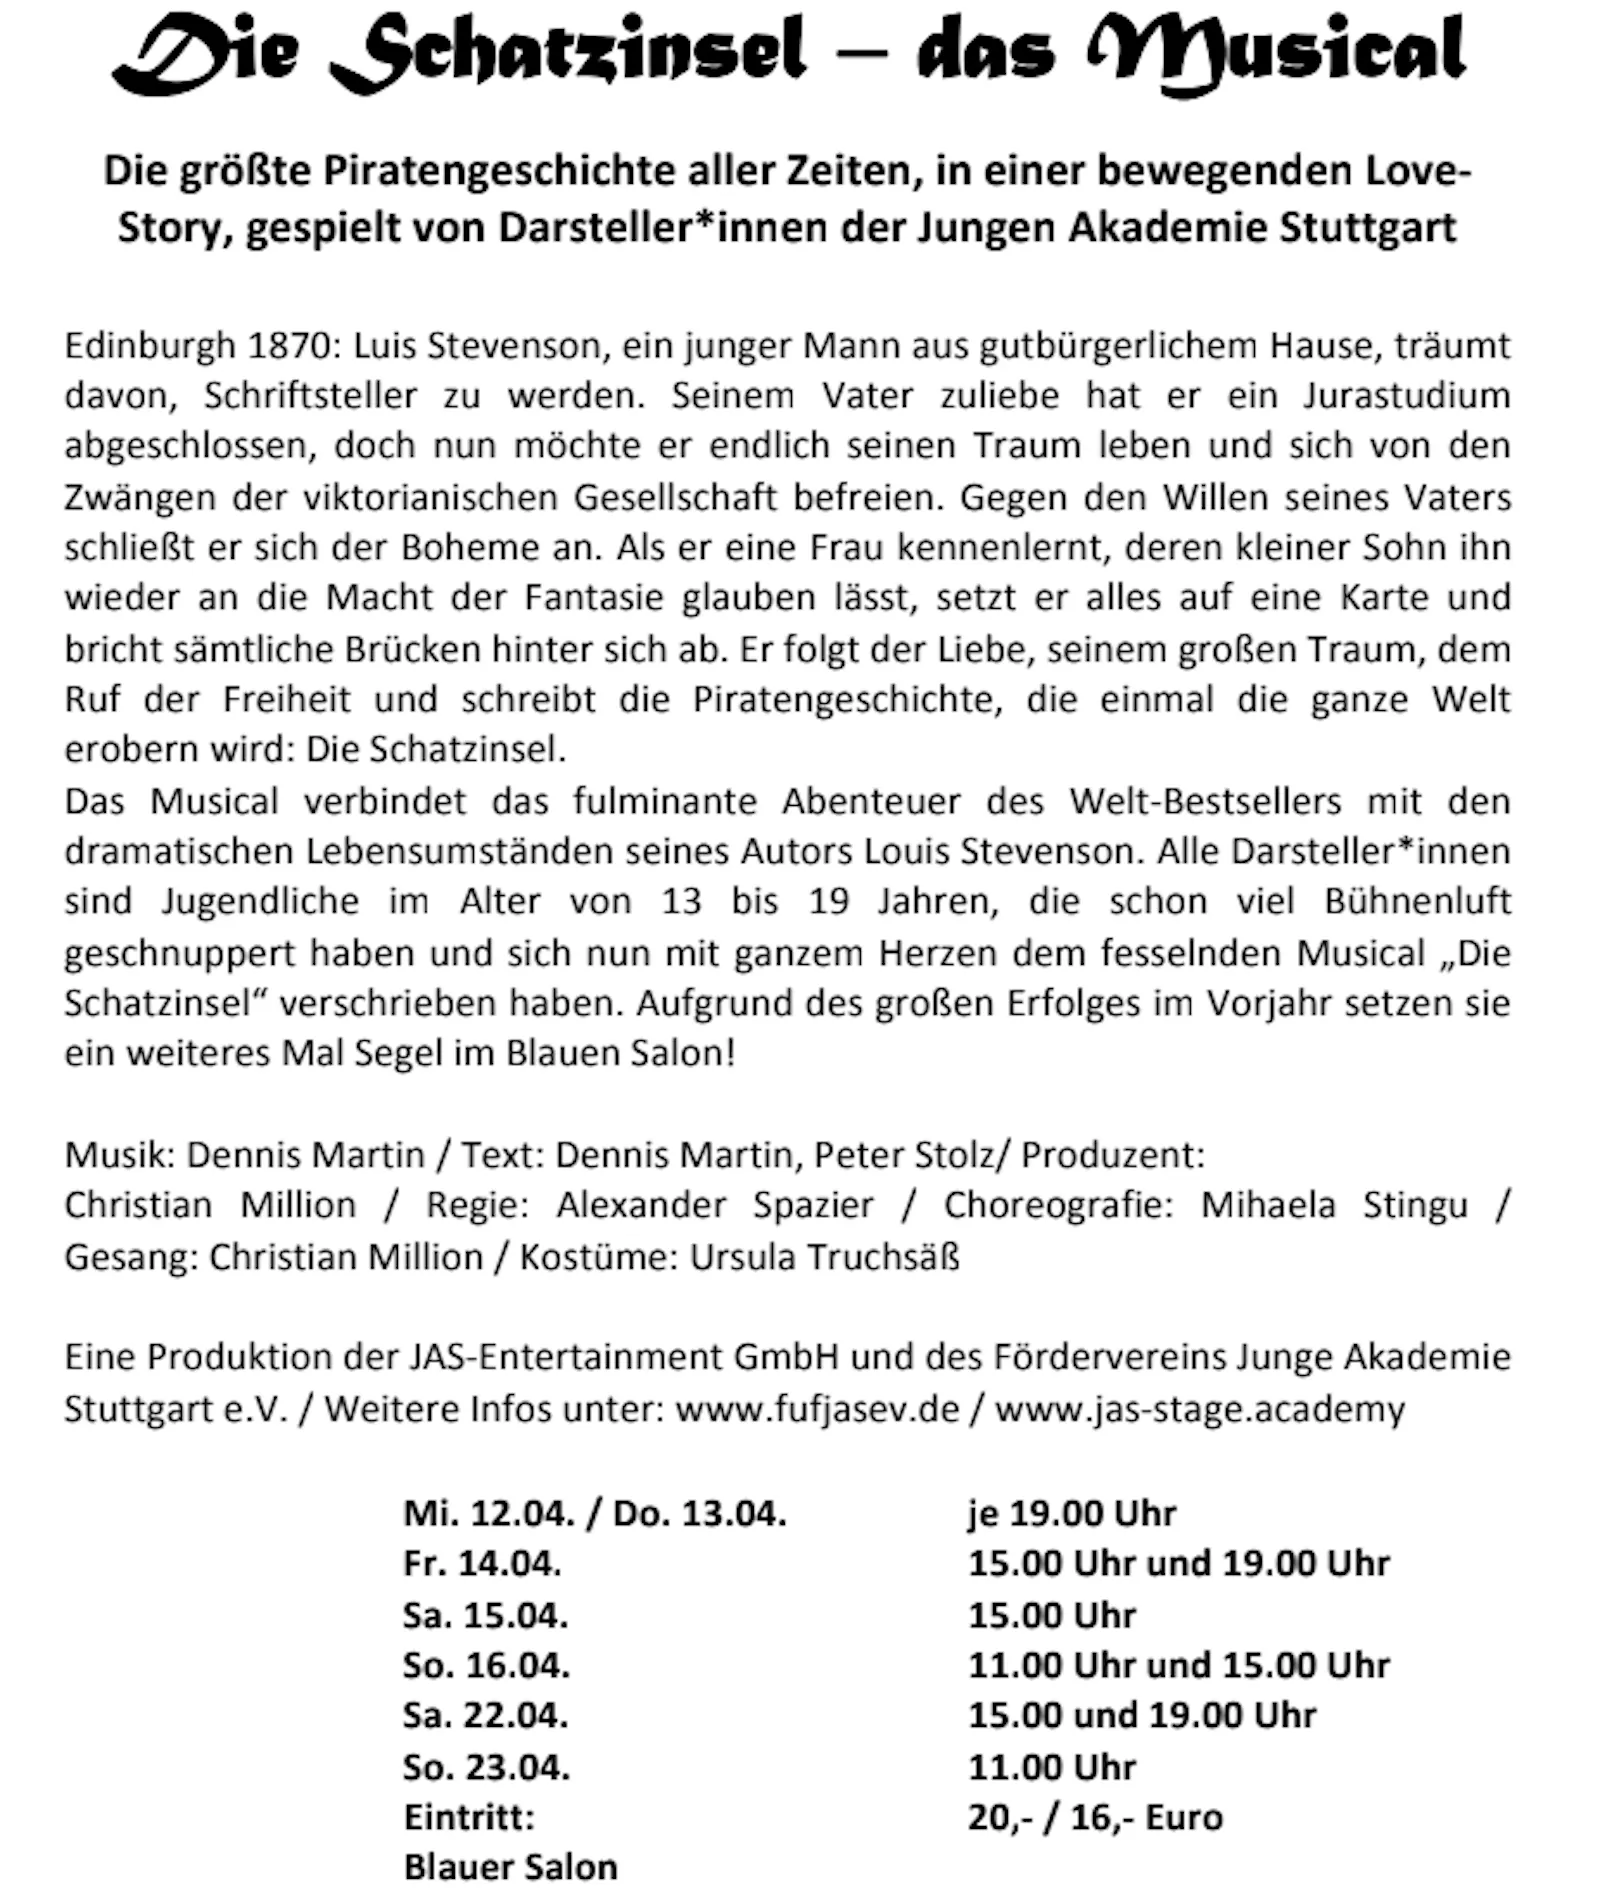 Pressetext des Kulturwerks zum Musical "Die Schatzinsel"